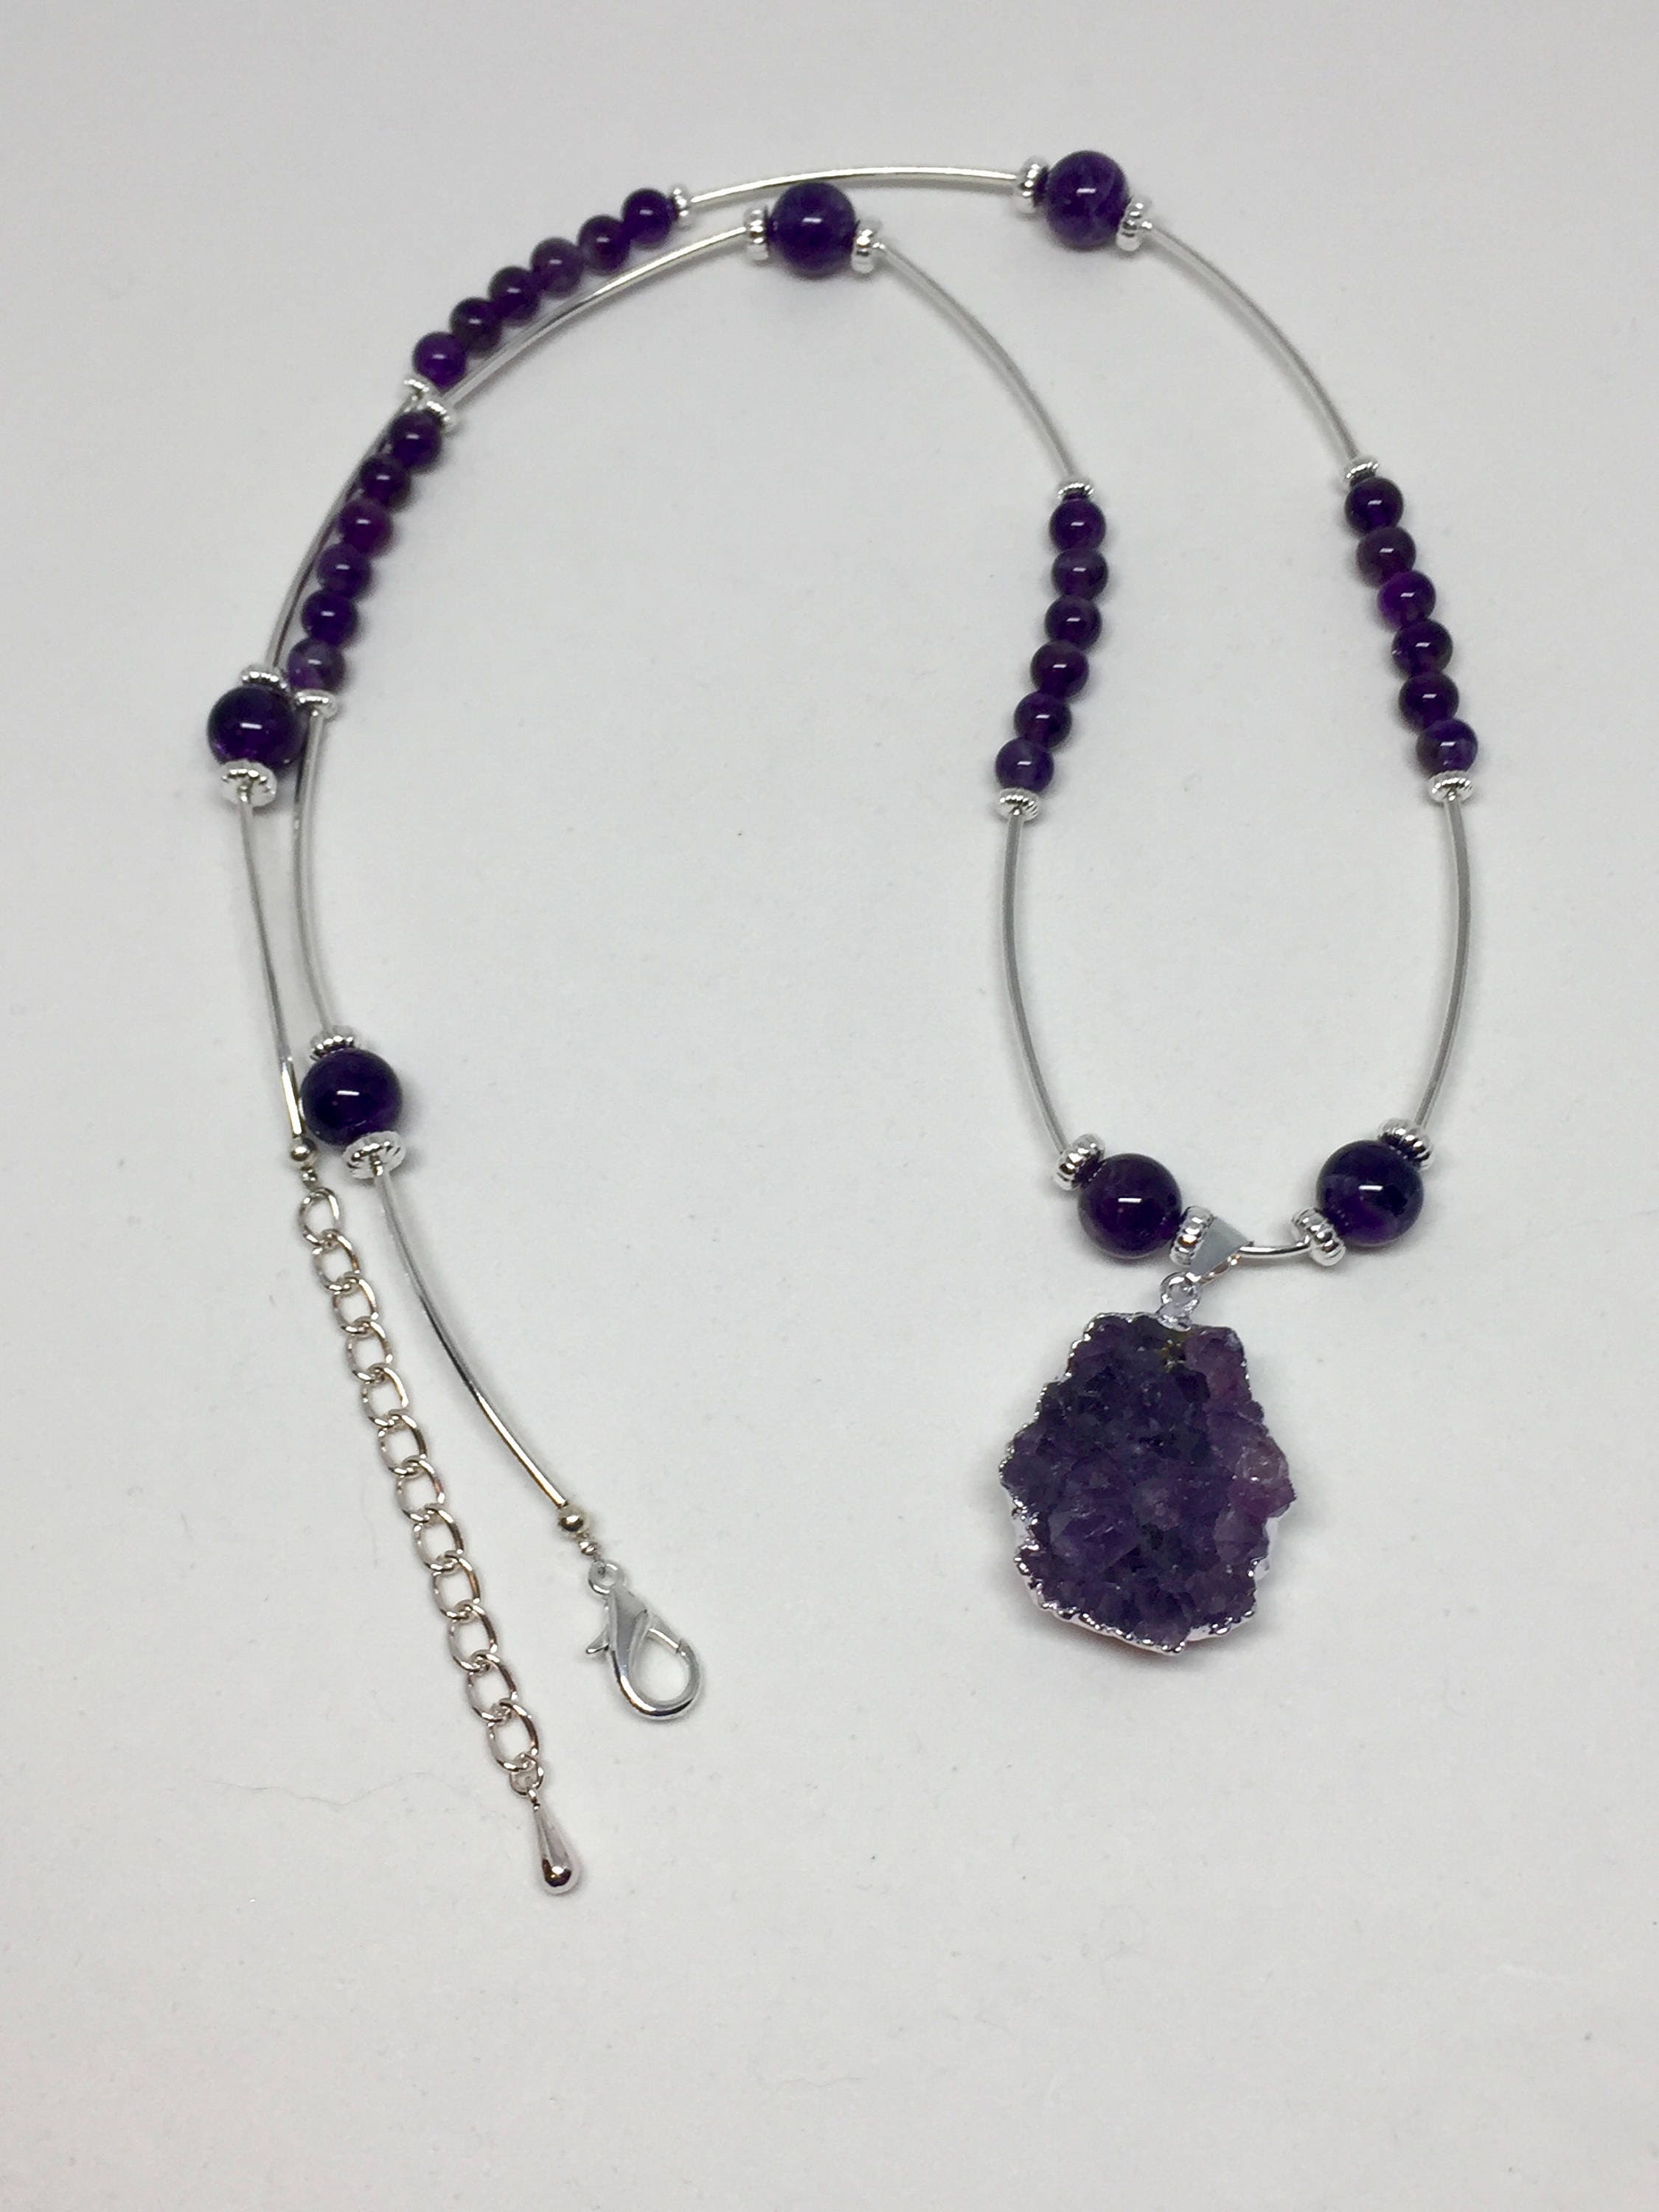 Amethyst druzy silver pendant necklace adjustable length dark | Etsy